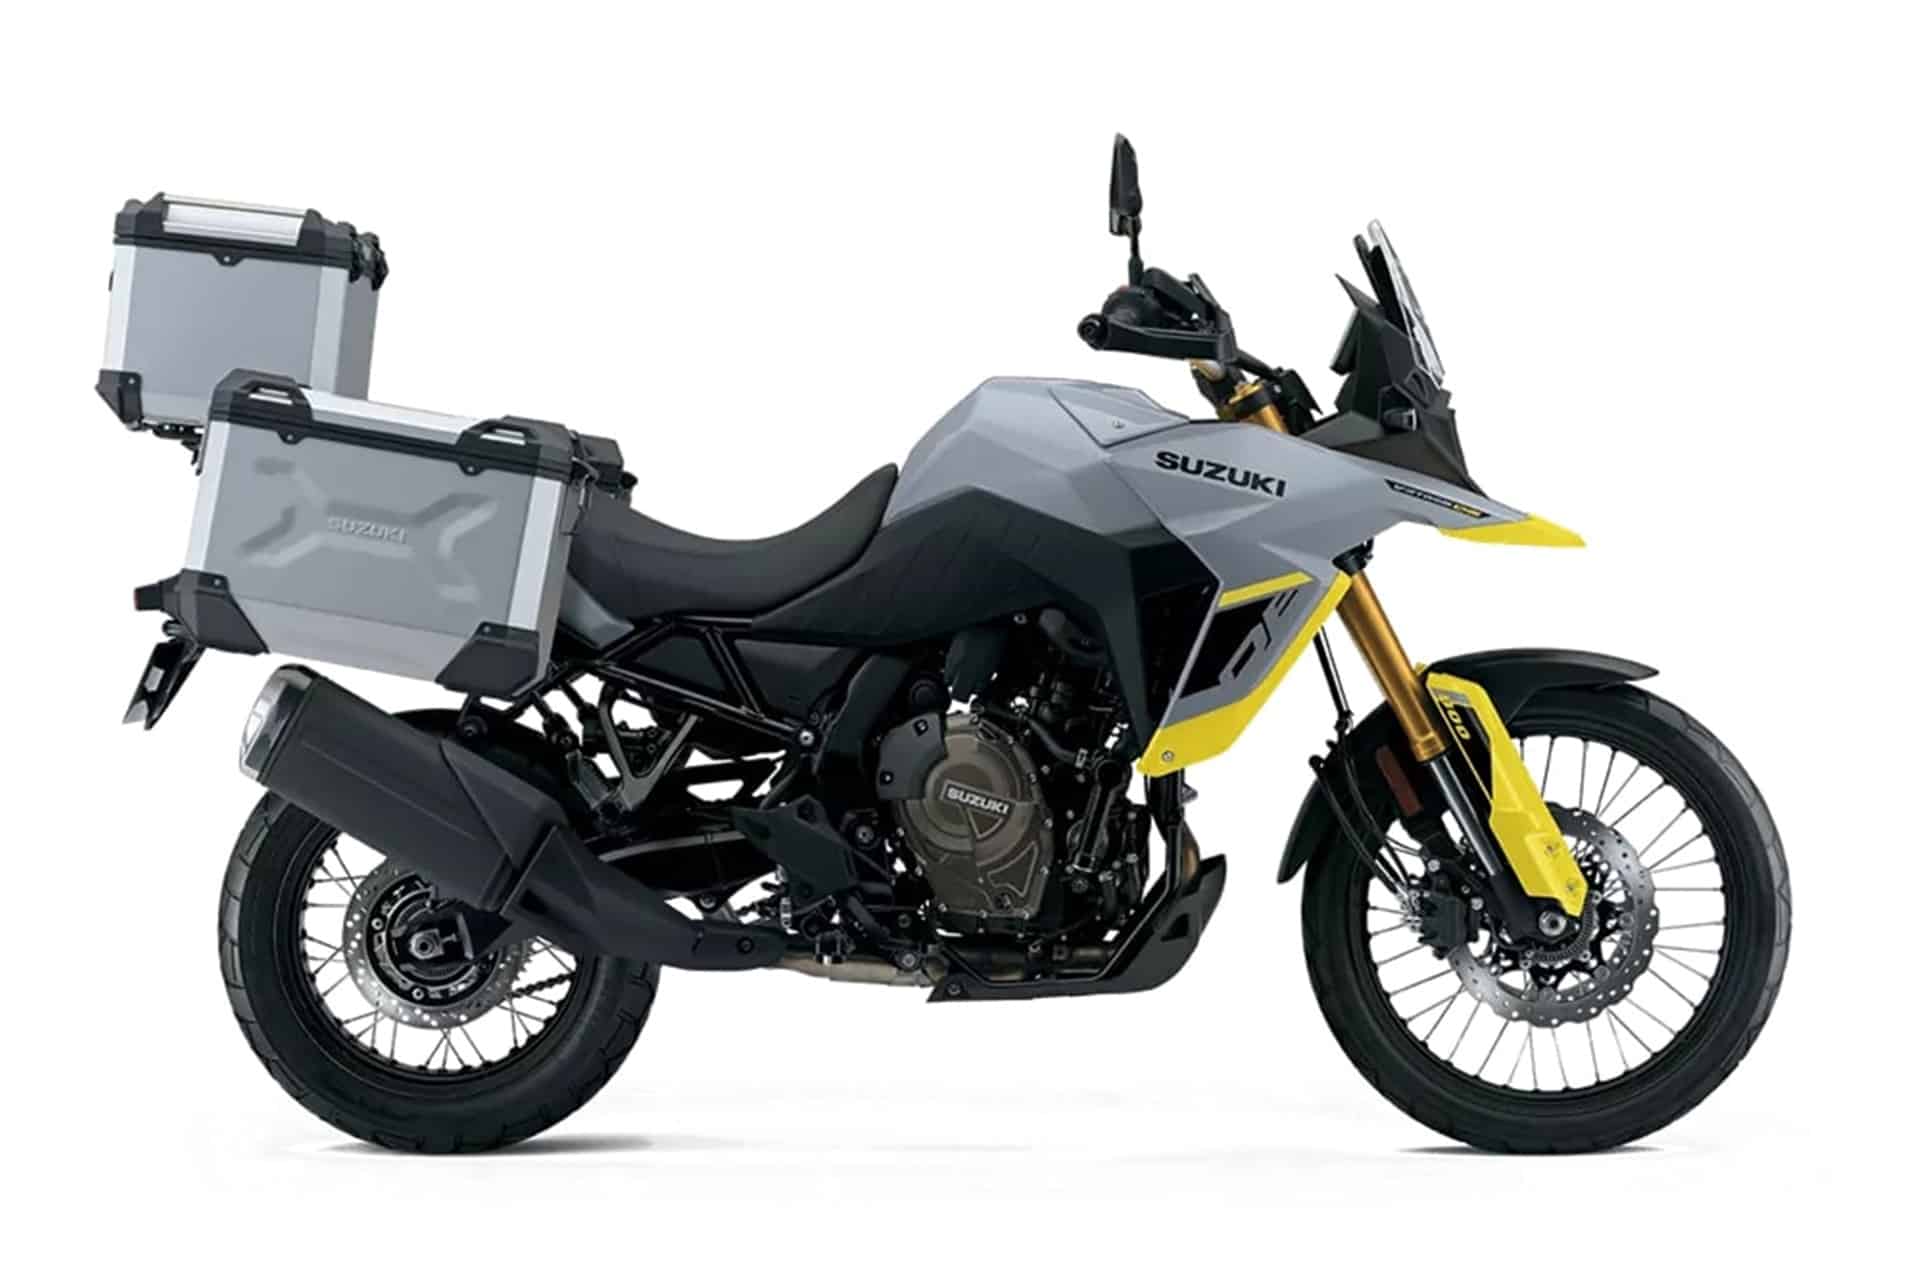 Suzuki presenta sus nuevas "ediciones Tour" para la gama V-Strom